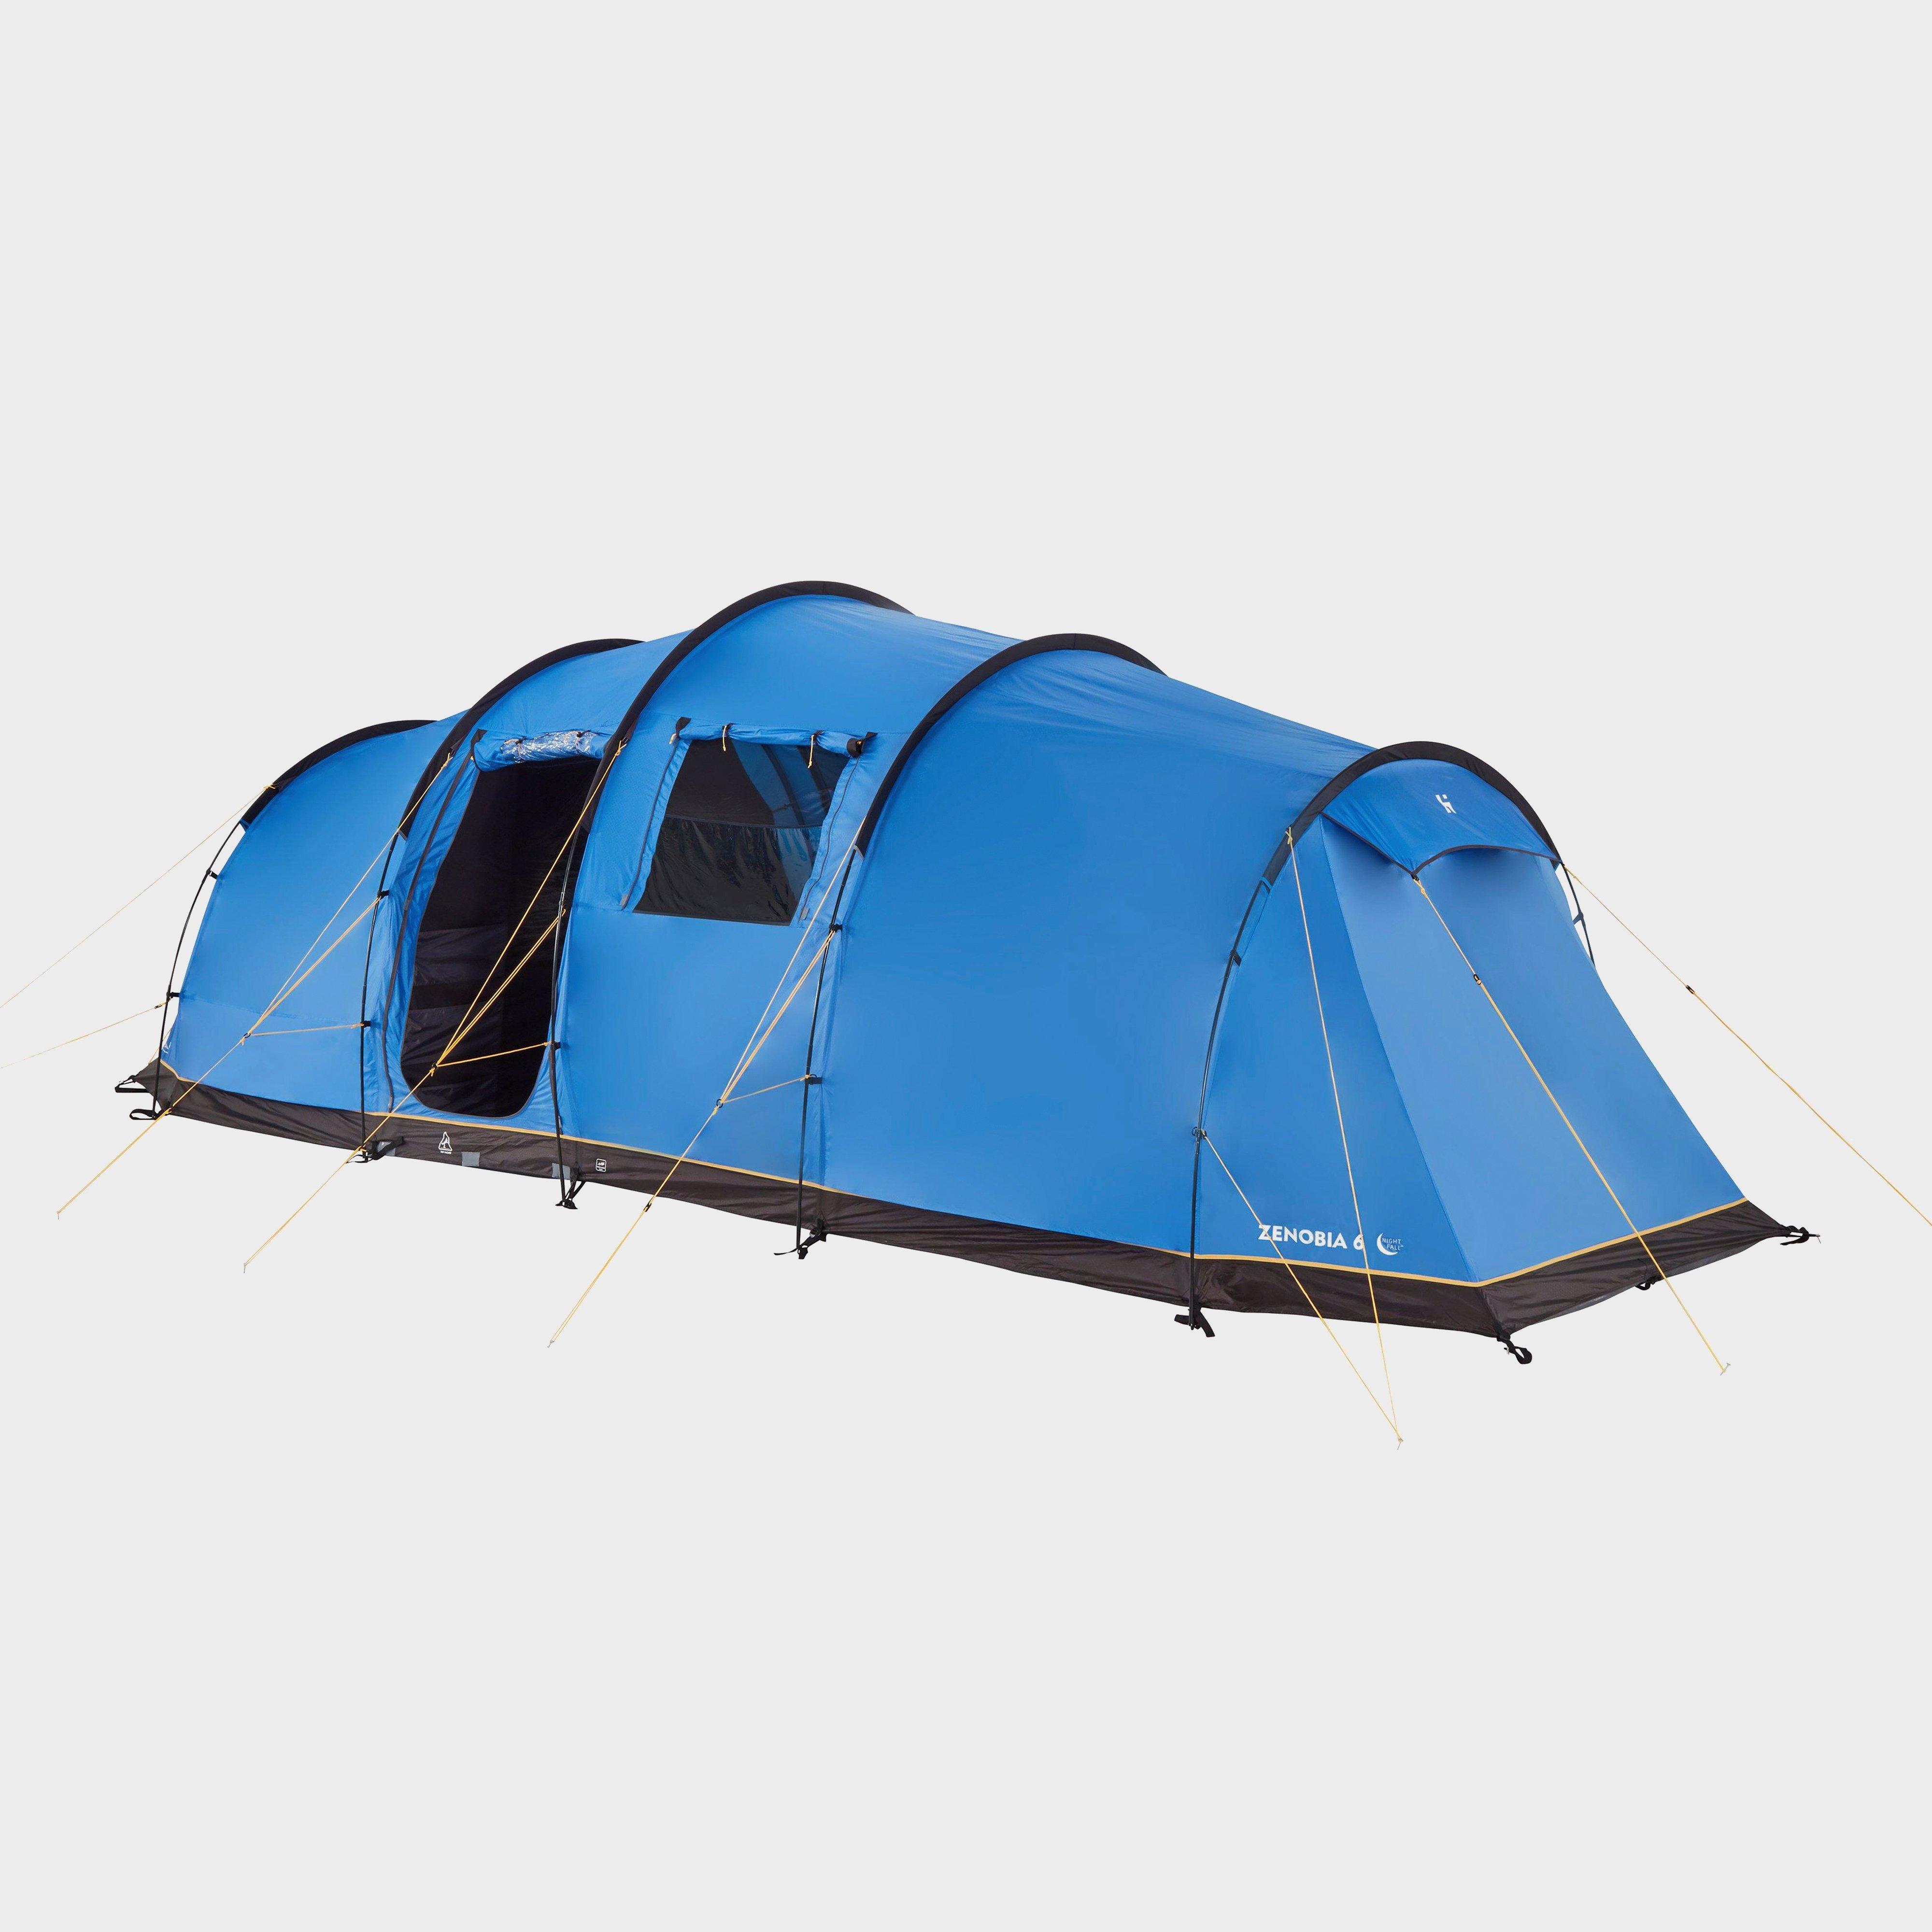 Photos - Tent Hi-Gear Zenobia 6 Nightfall , Blue 